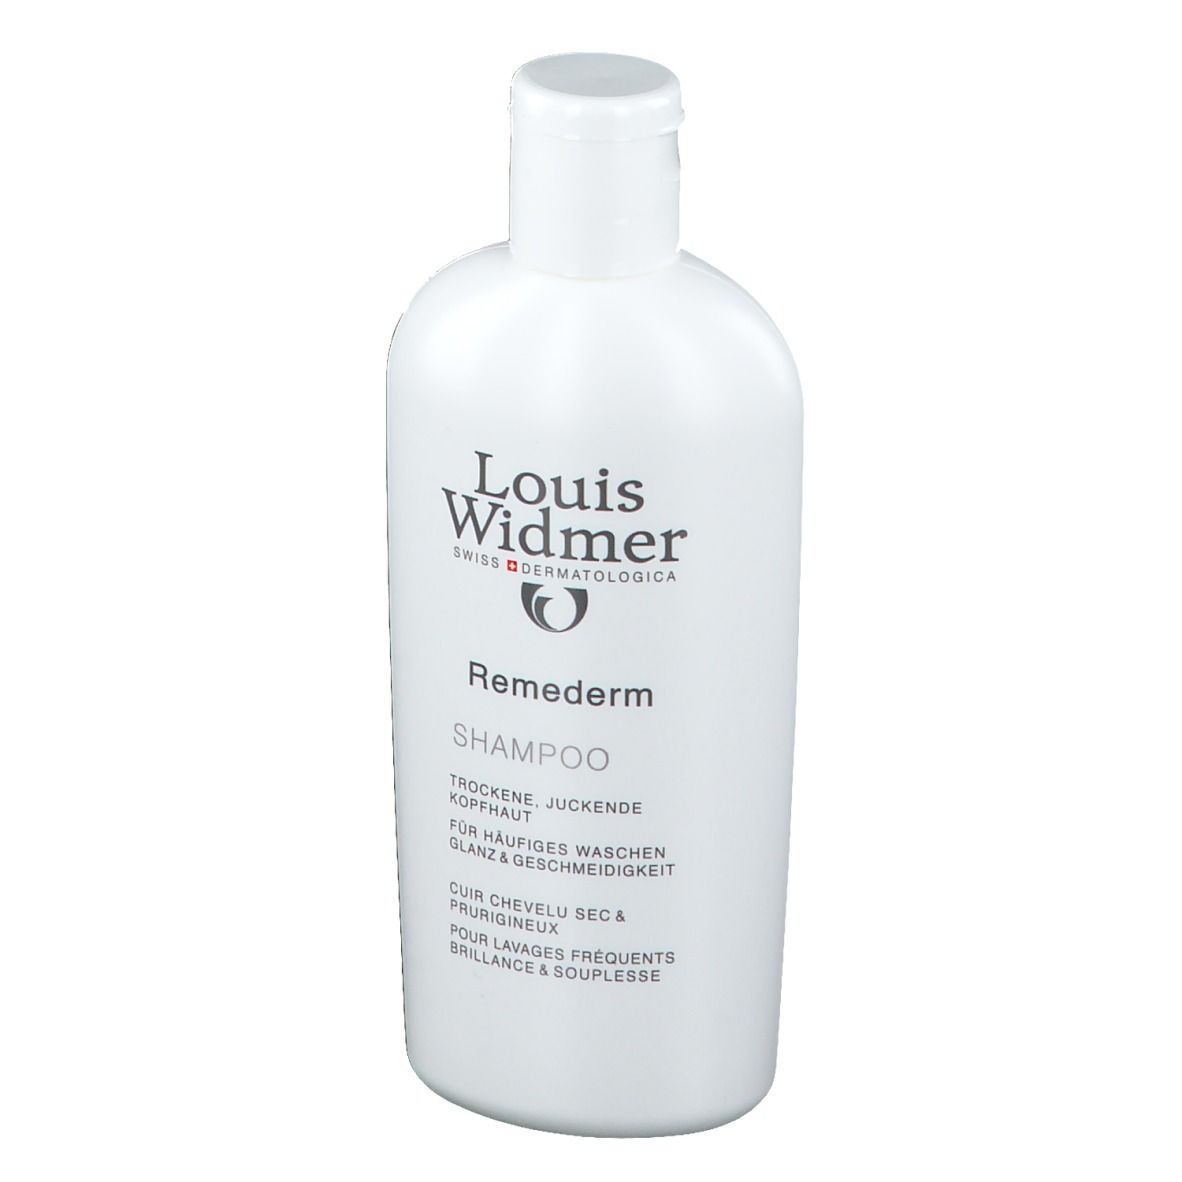 Louis Widmer Remederm Shampoo leicht parfümiert